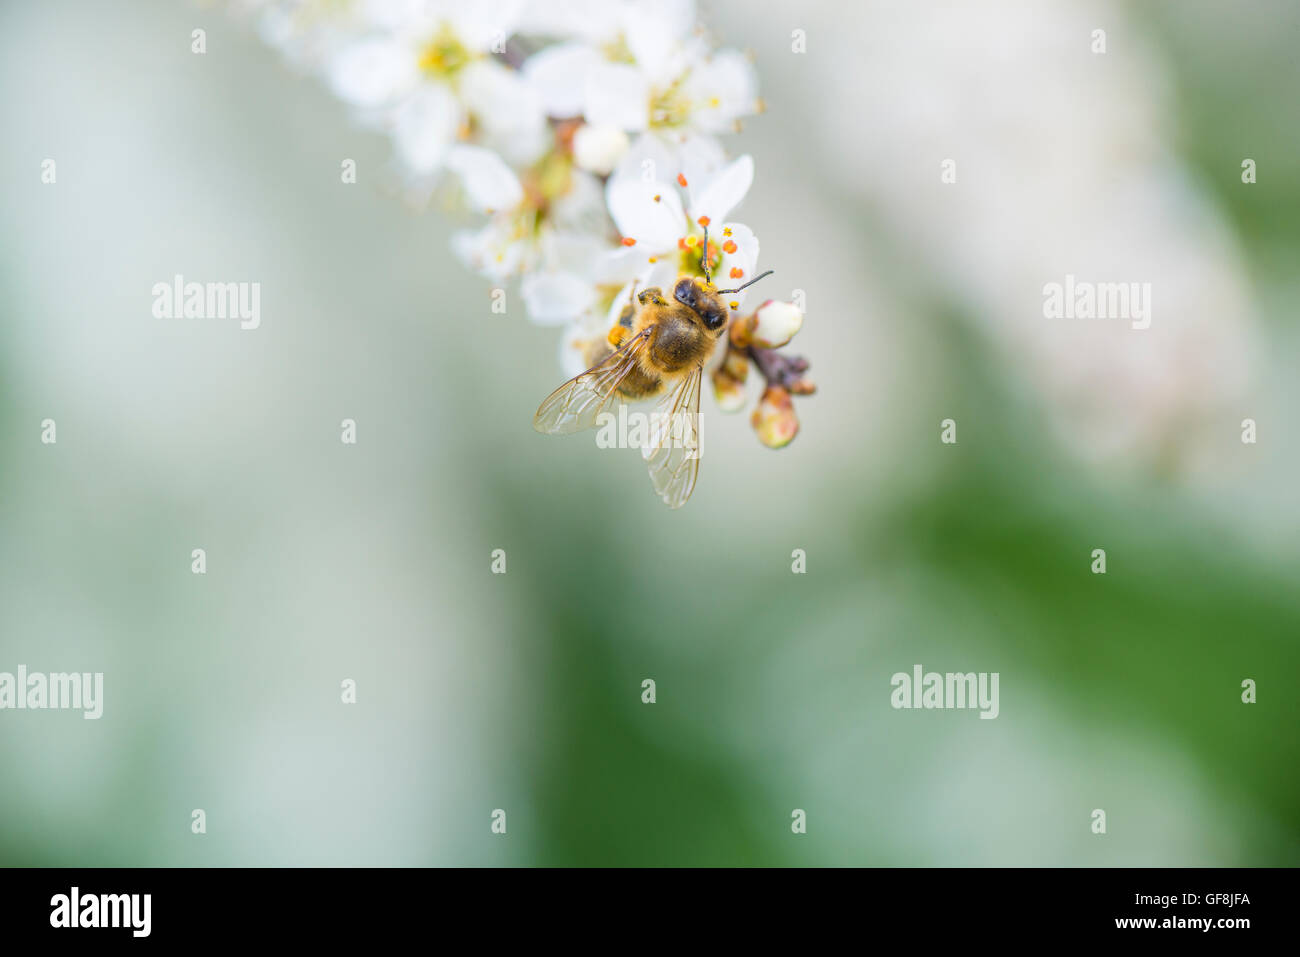 Cherry tree blossom with honey bee Stock Photo